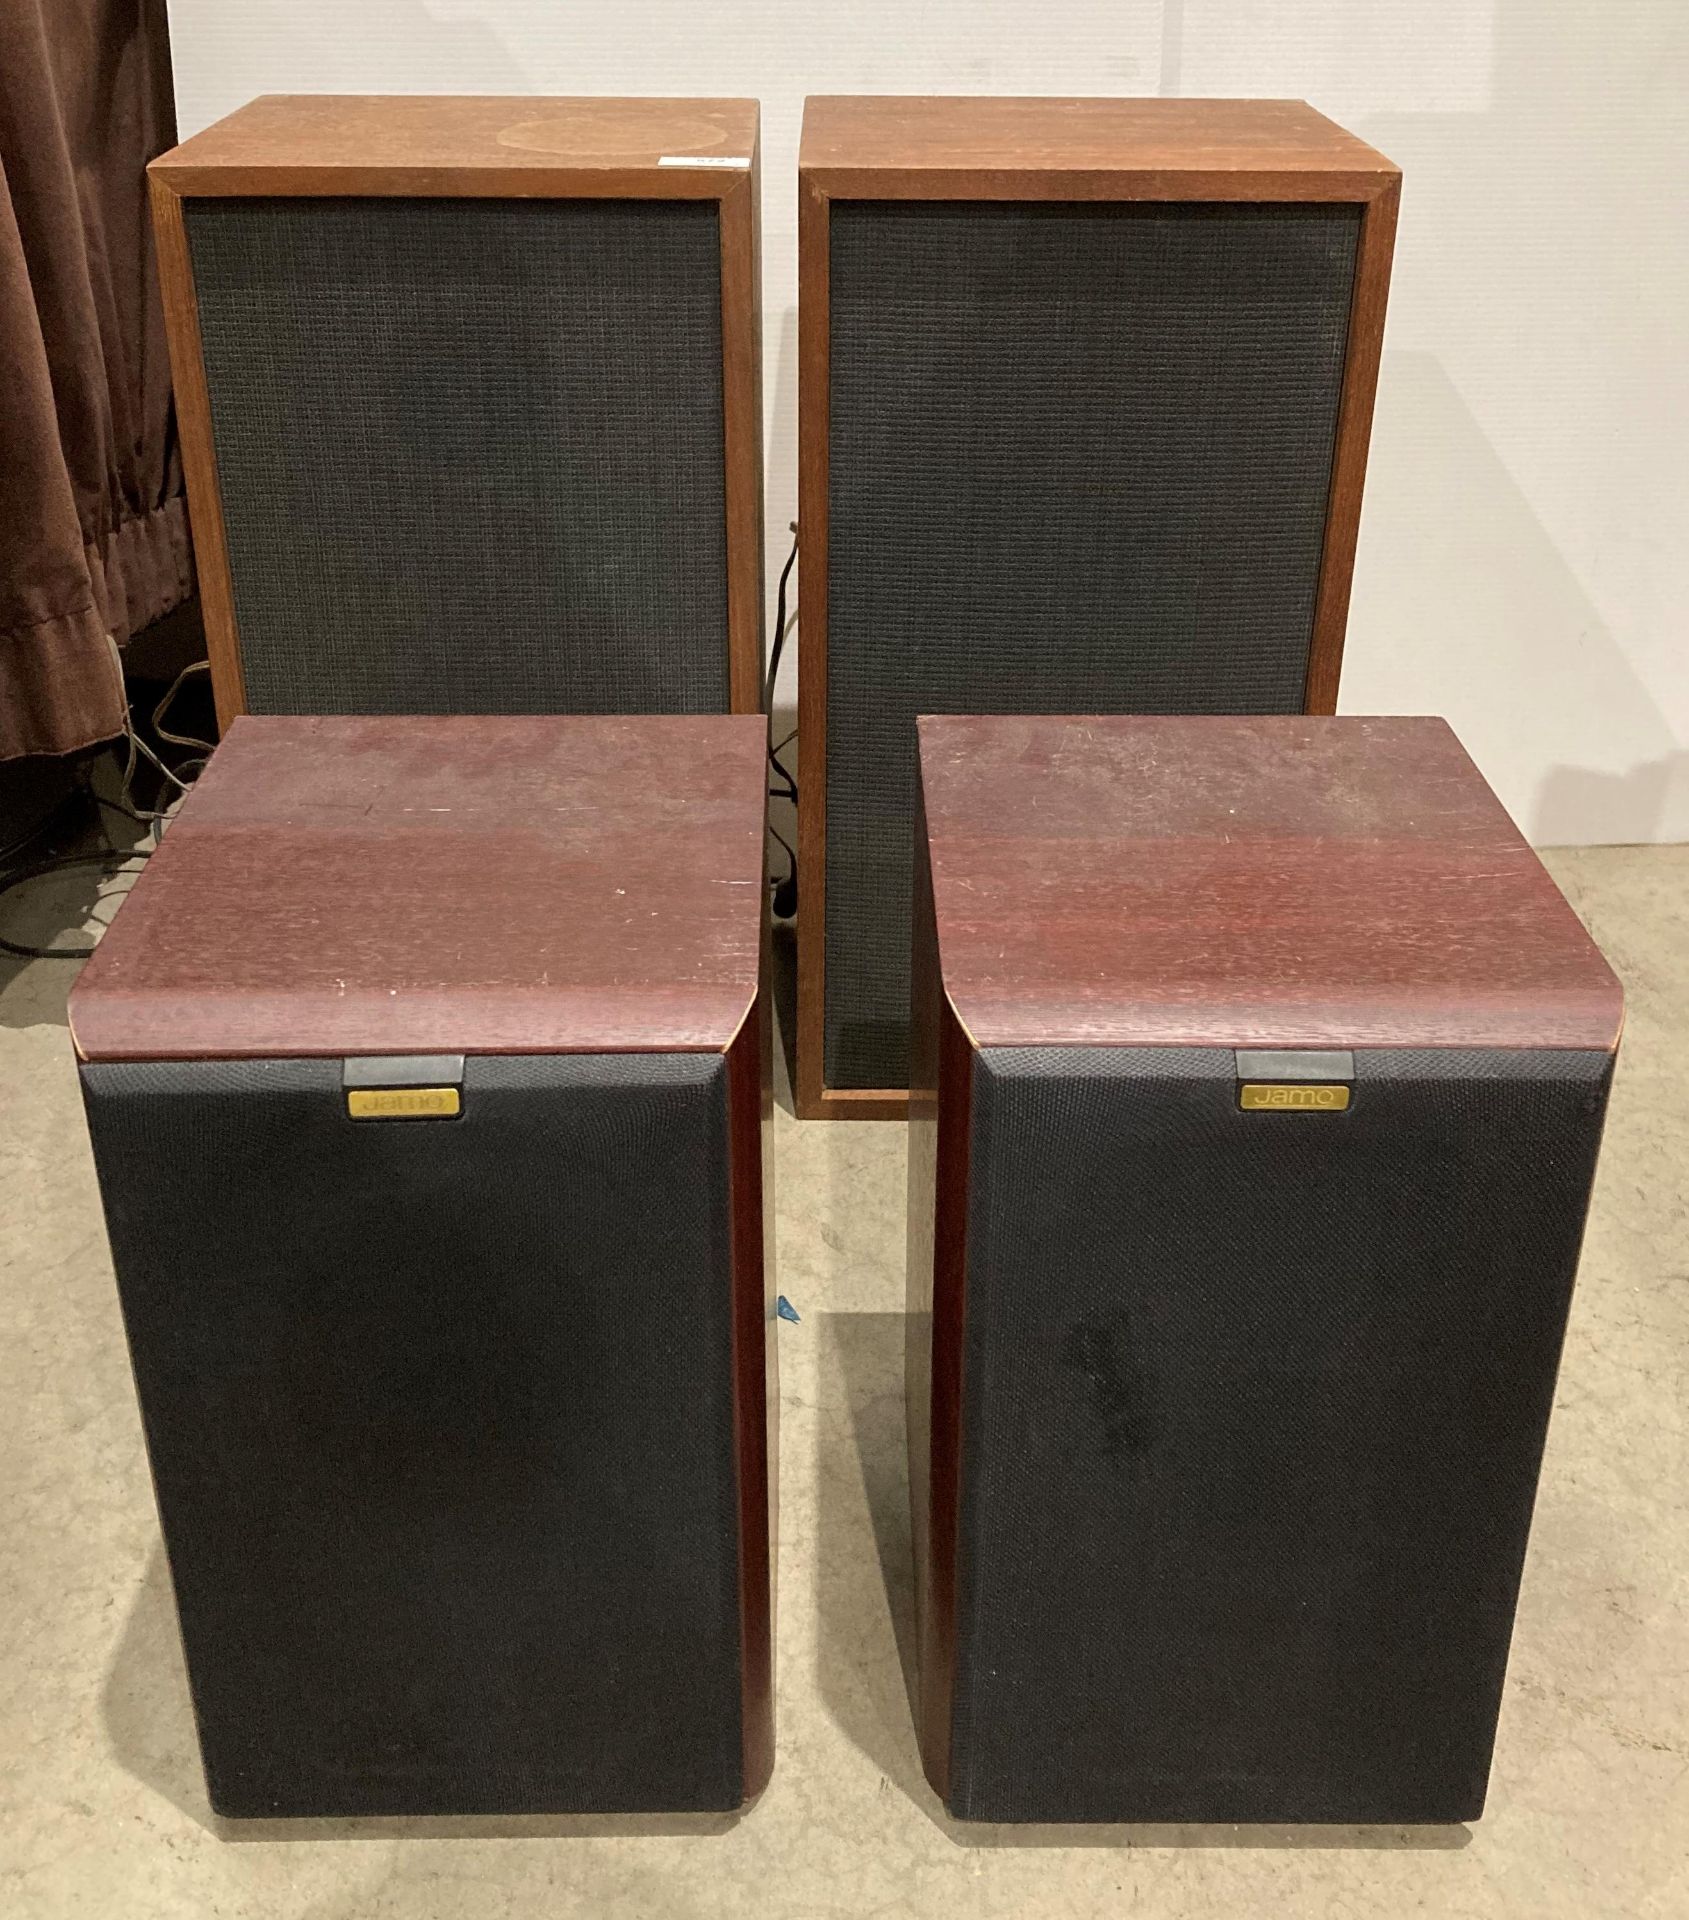 Pair of Jamo Cornet 3011 80w speakers and a pair of vintage Heathkit speakers model: 5CM-6